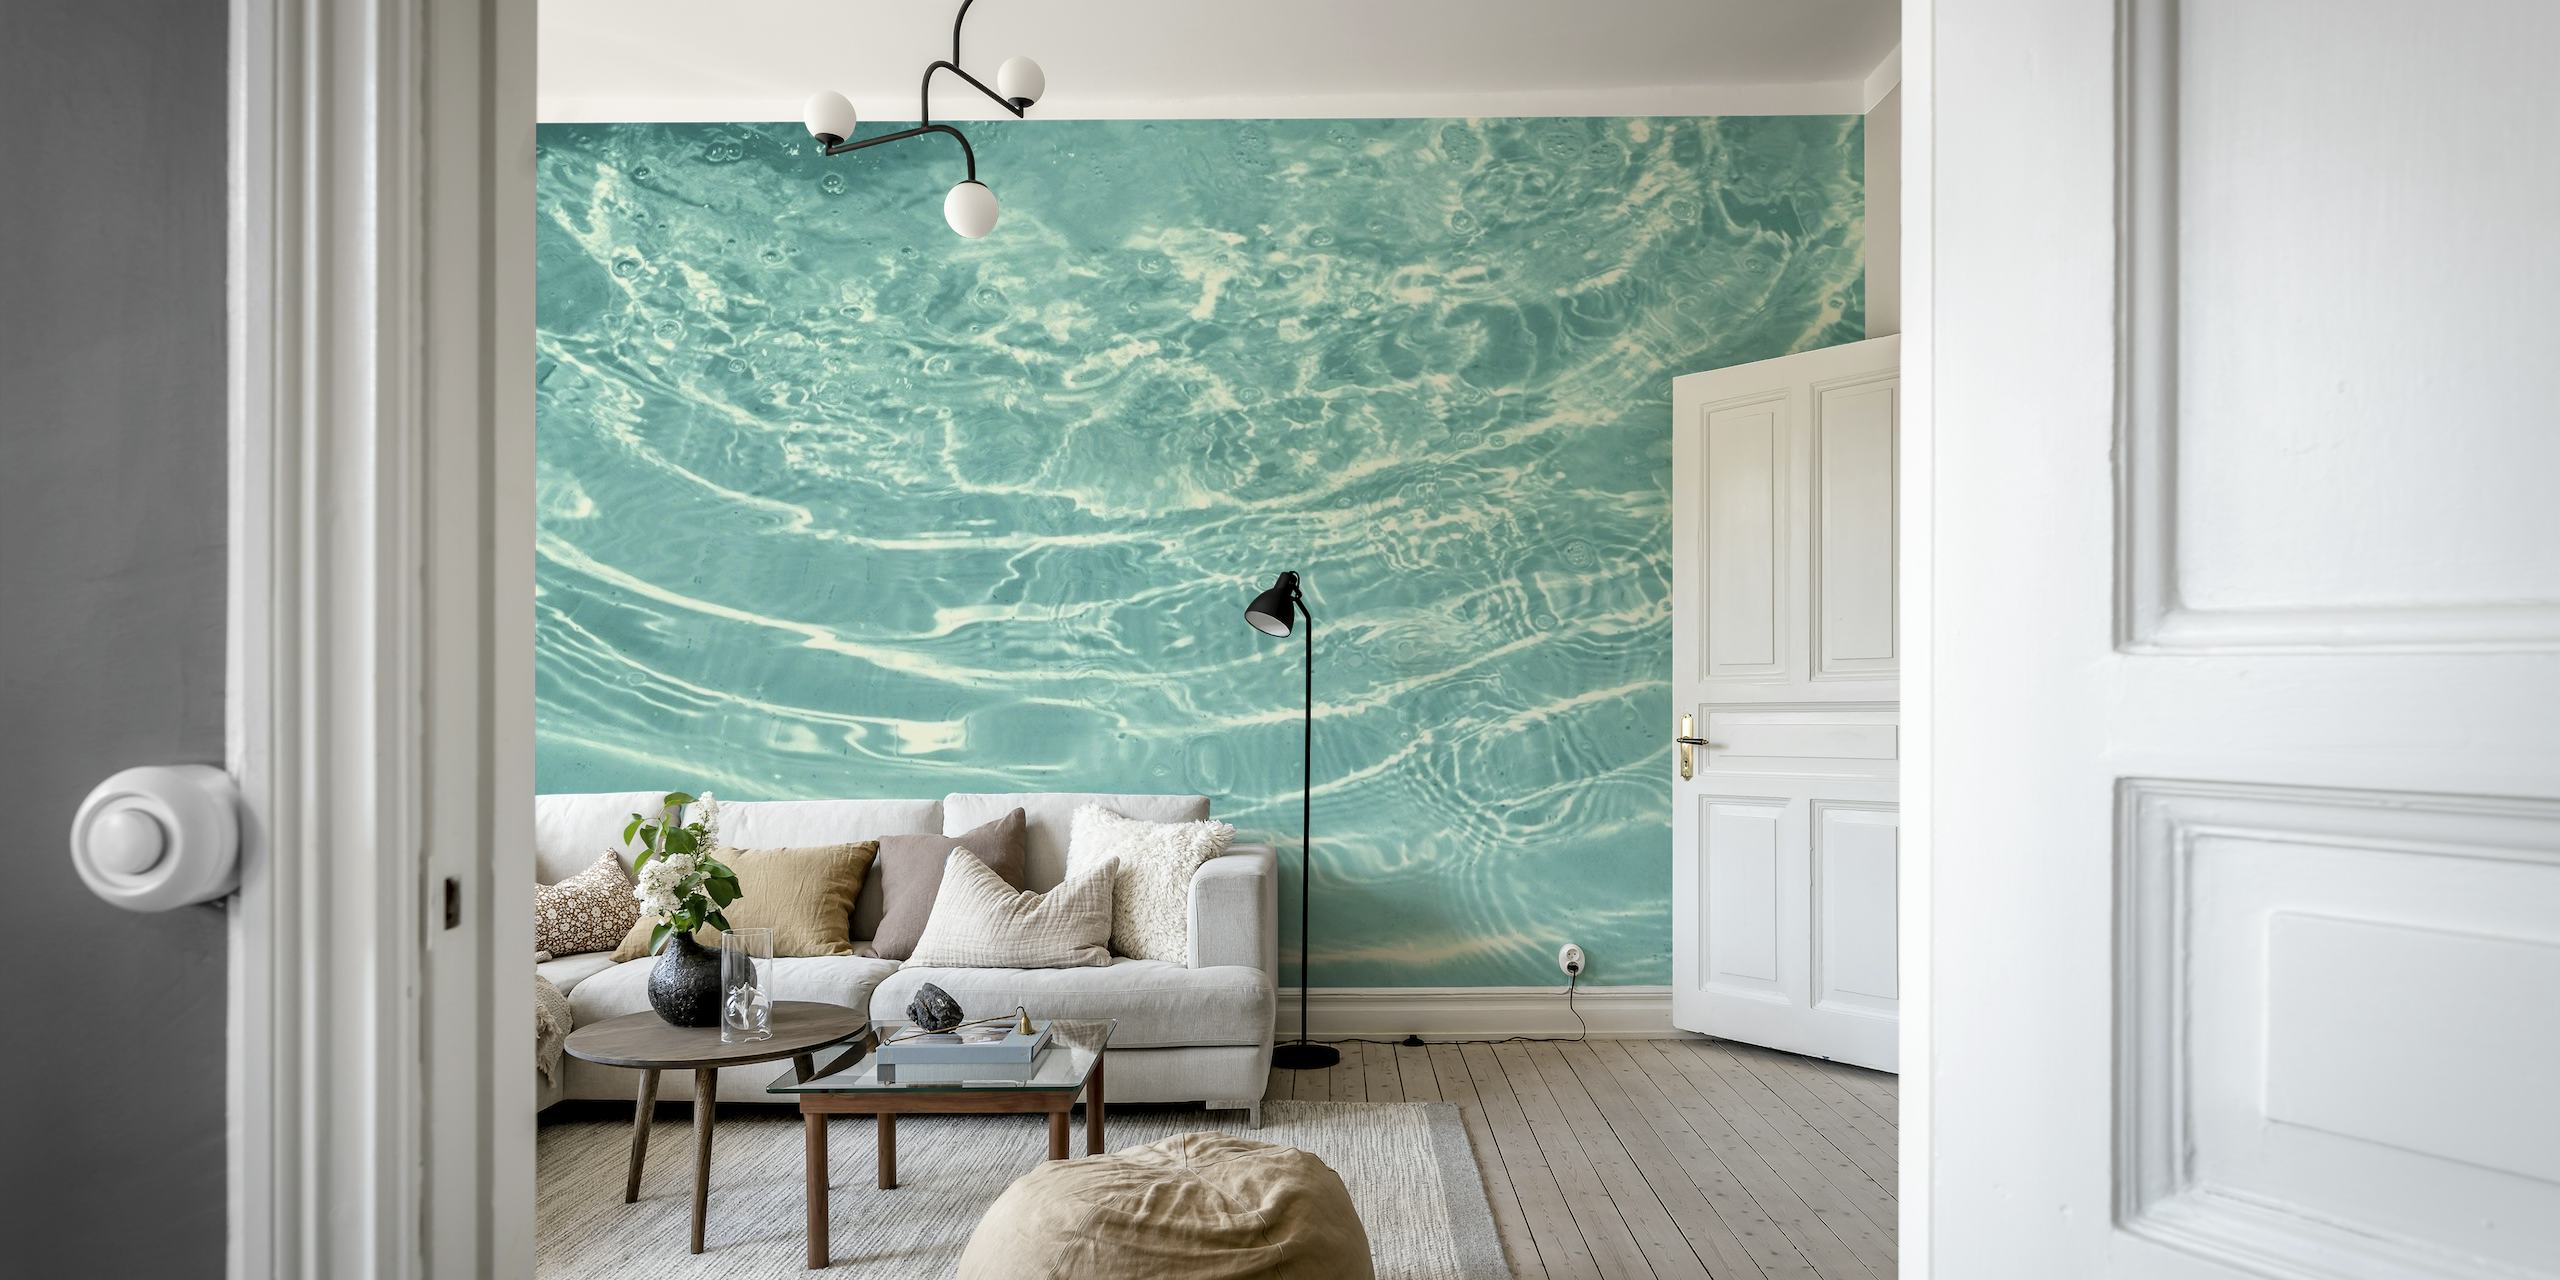 Mural de parede de água turquesa com ondulações suaves criando um efeito calmante.